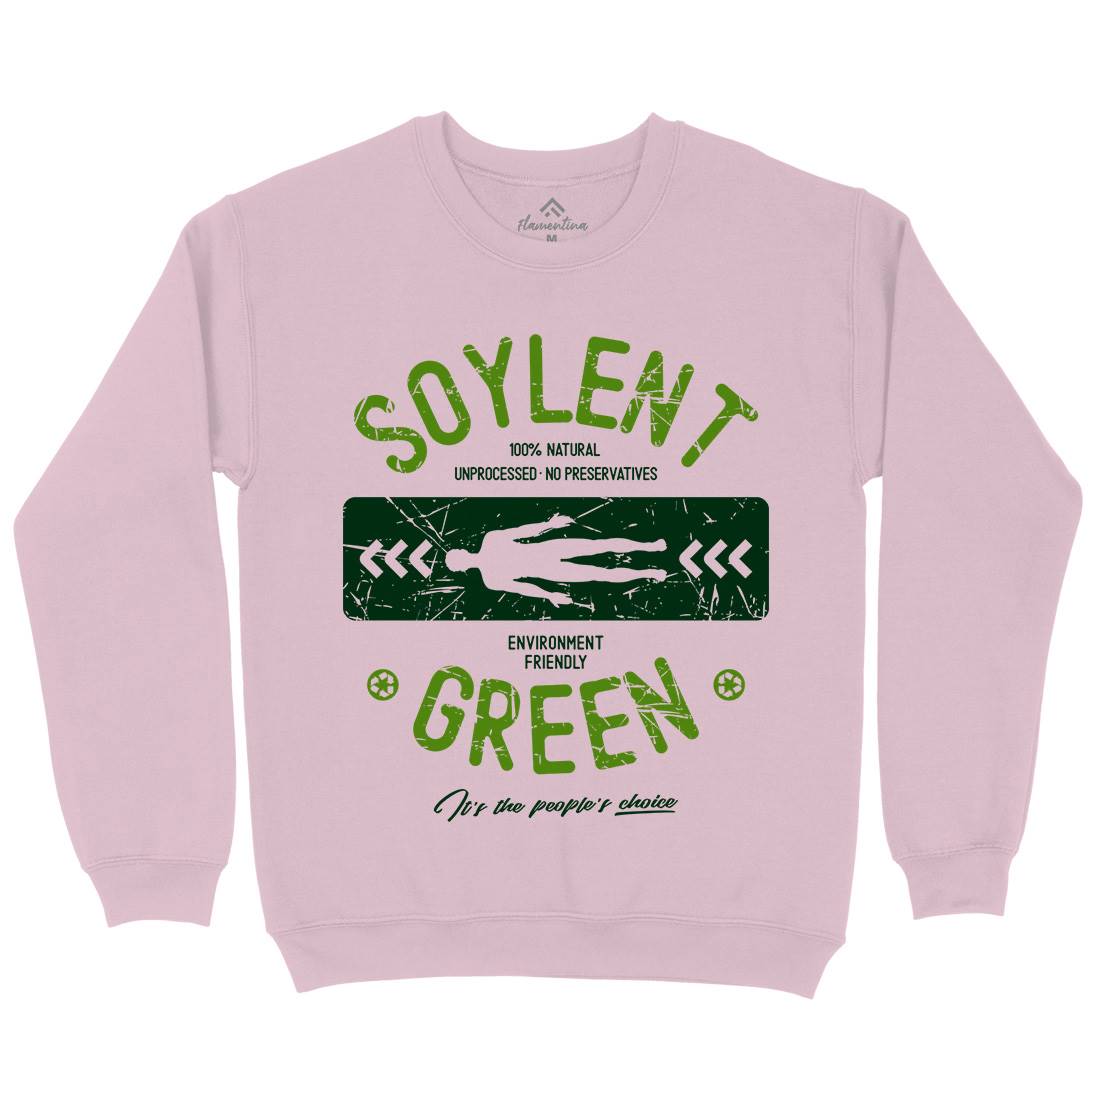 Soylent Green Kids Crew Neck Sweatshirt Horror D182